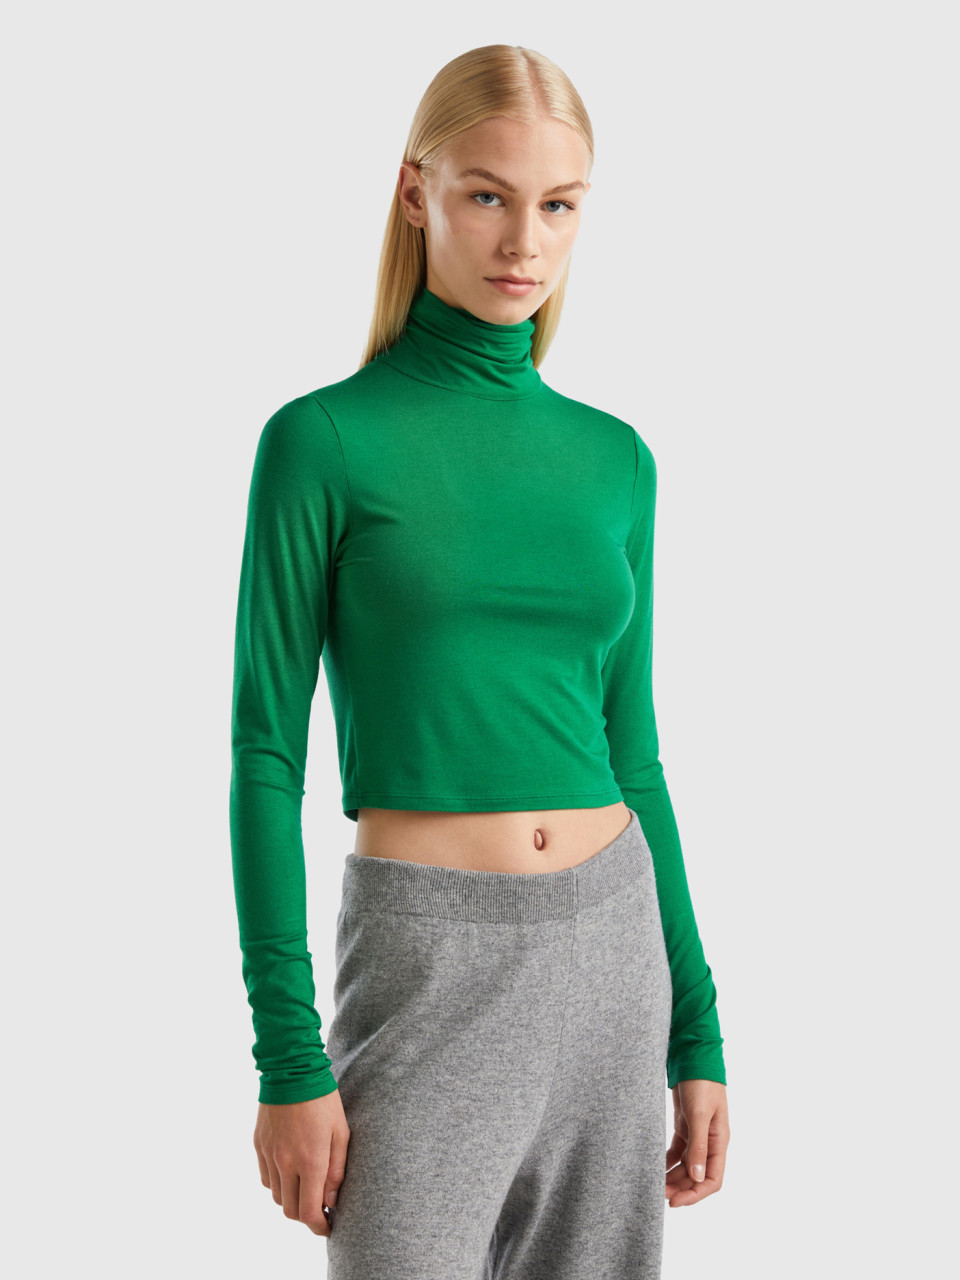 Benetton, T-shirt With High Neck, Green, Women